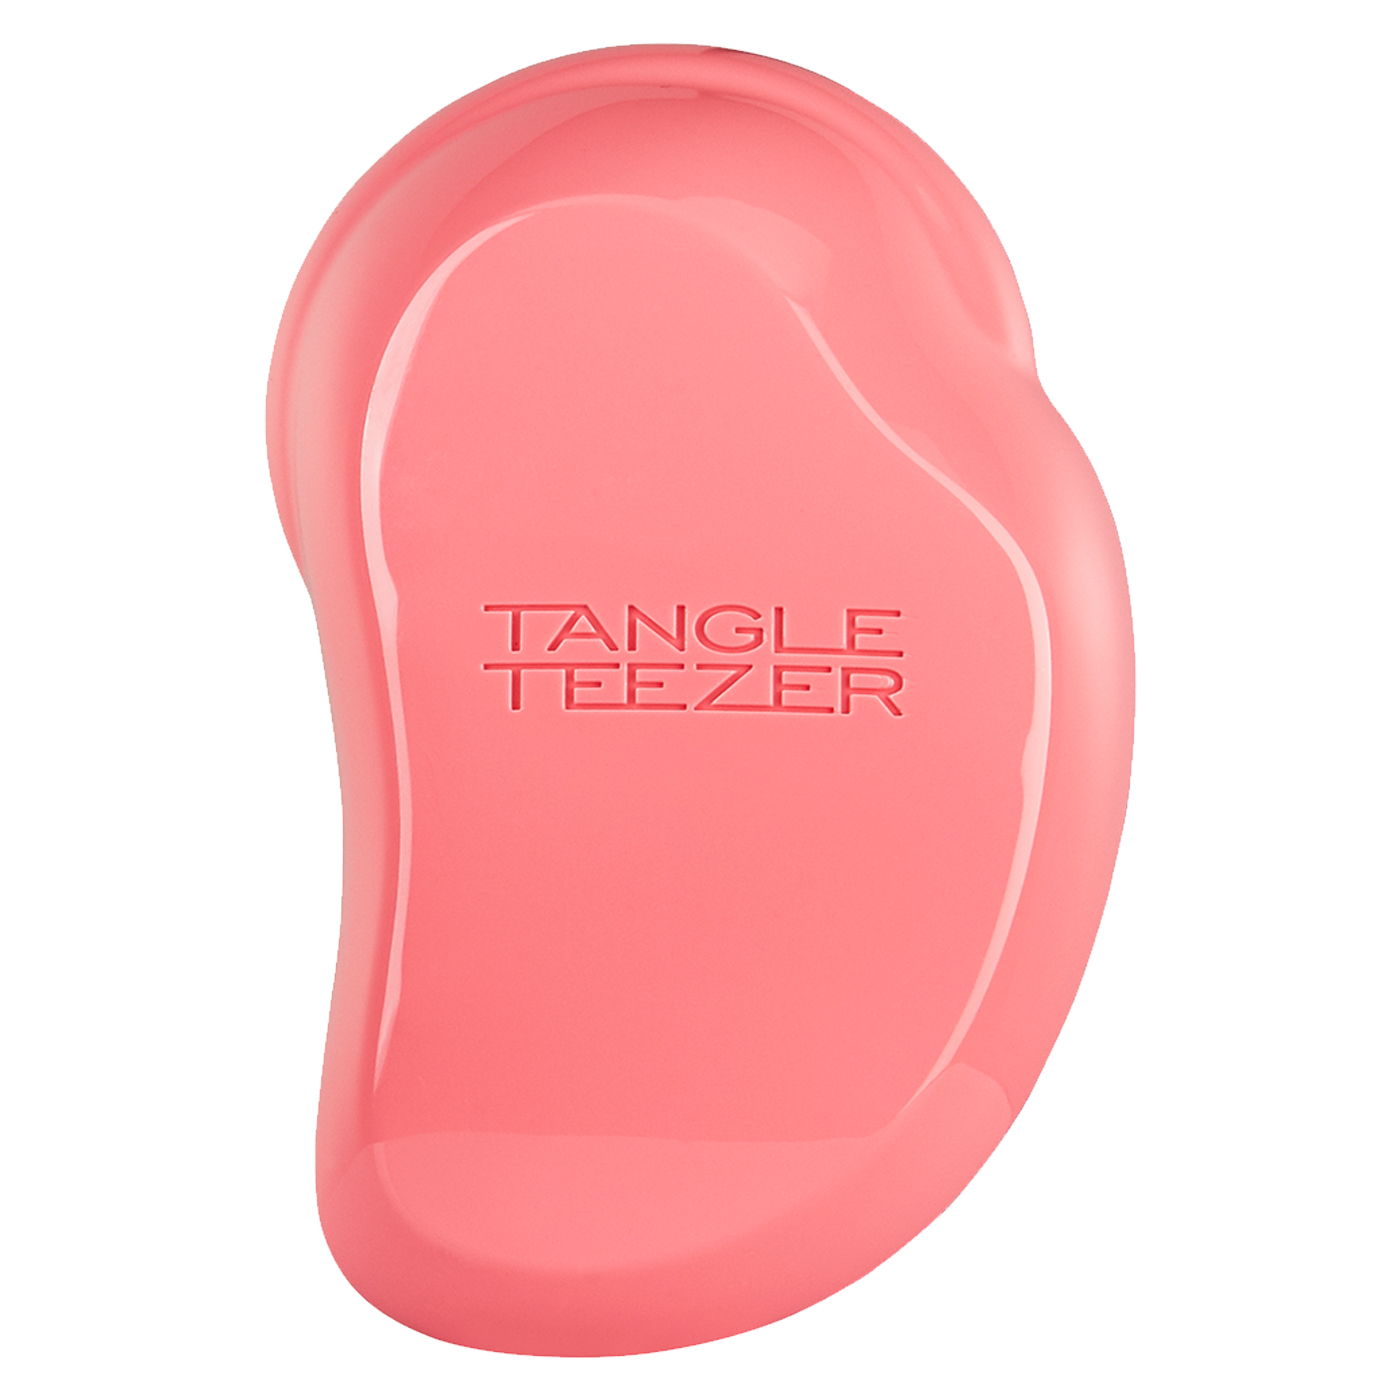  Tangle Teezer Compact Styler Saç Fırçası  | Coral Pink